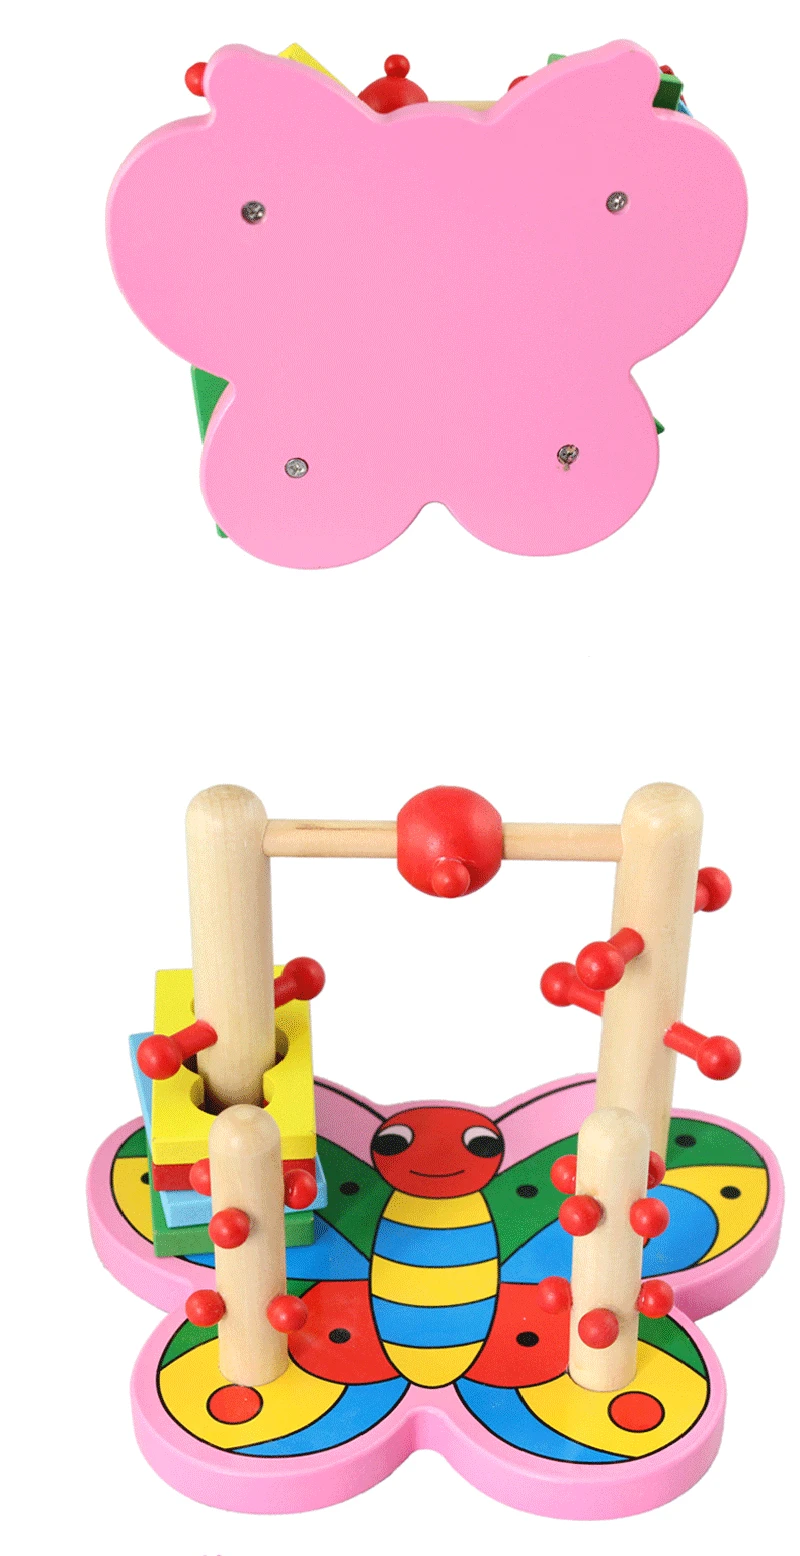 Eva2king Детские деревянные игрушки Бабочка Набор мультфильм Logic Спорт умений 3D игры вращающийся блок блоков детские головоломки Лидер продаж